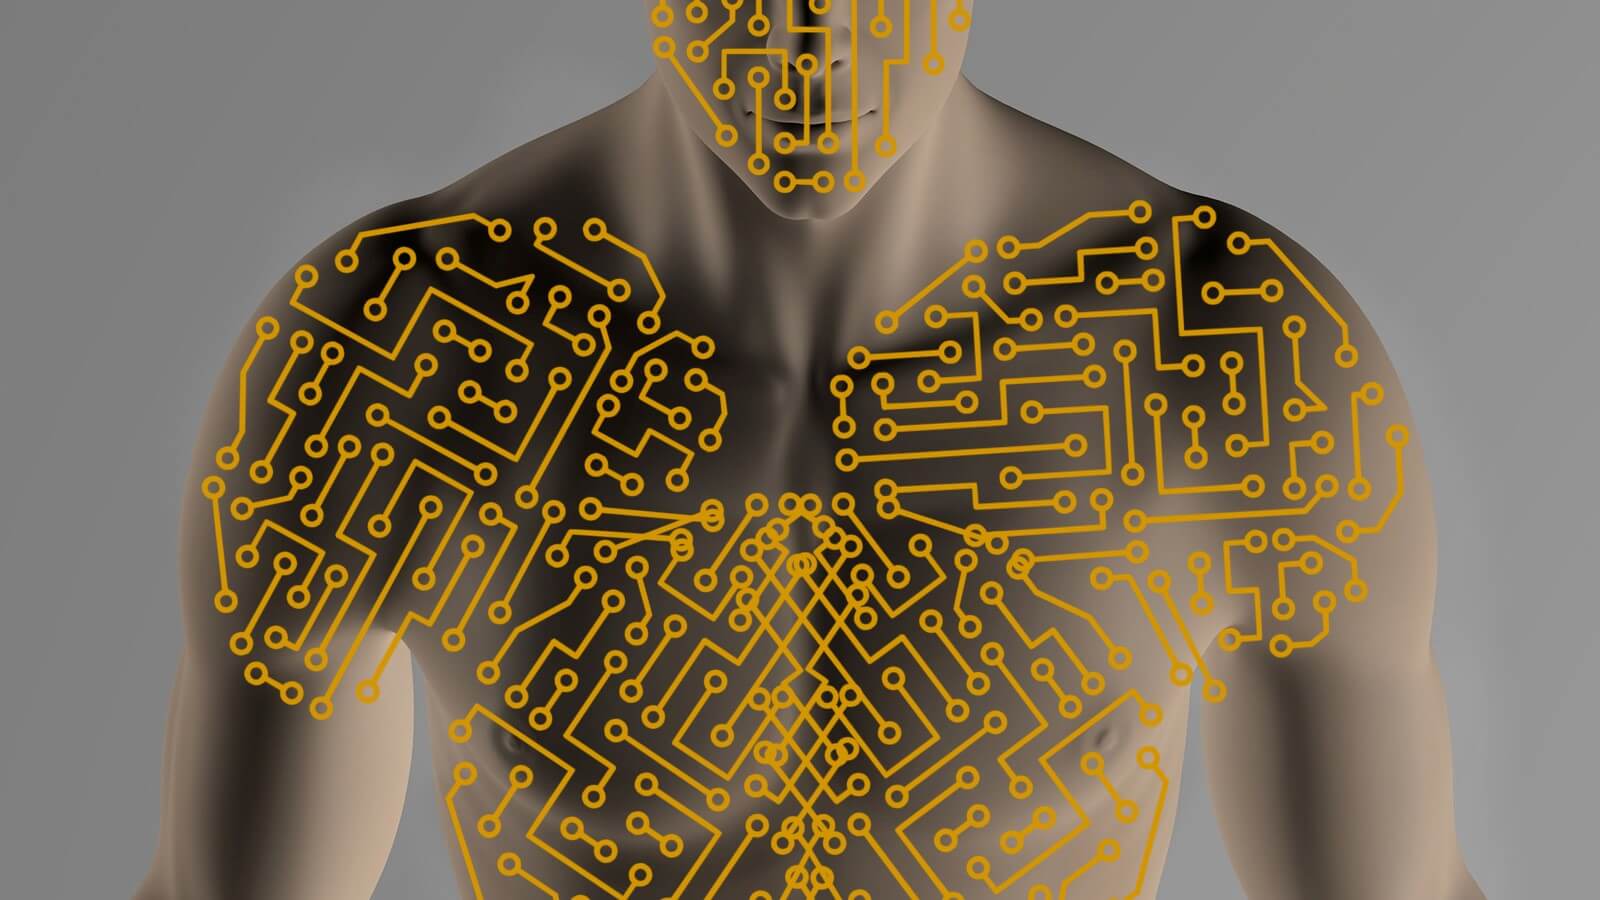 Sistema bioinformacional do corpo humano